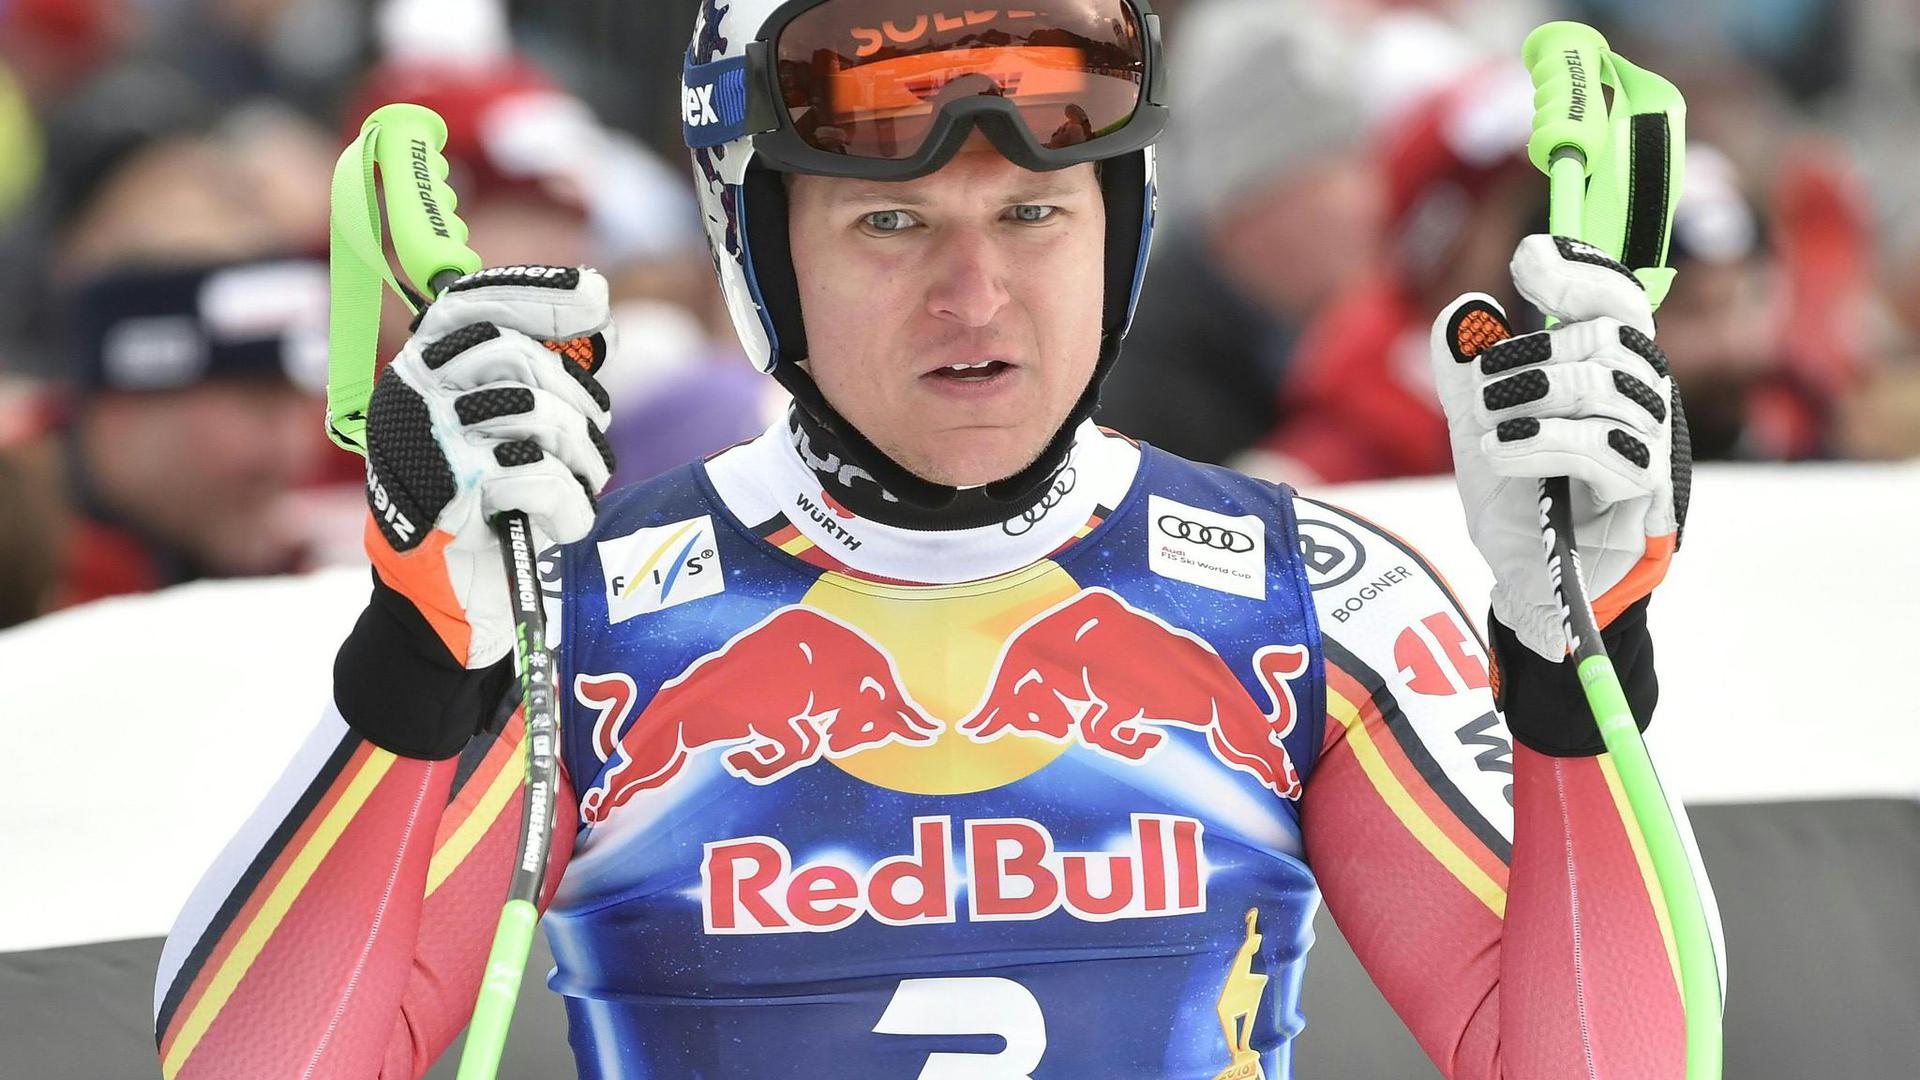 Der Deutsche Skiverband wird Thomas Dreßen trotz dessen Verletzung zur WM nach Cortina d'Ampezzo mitnehmen.